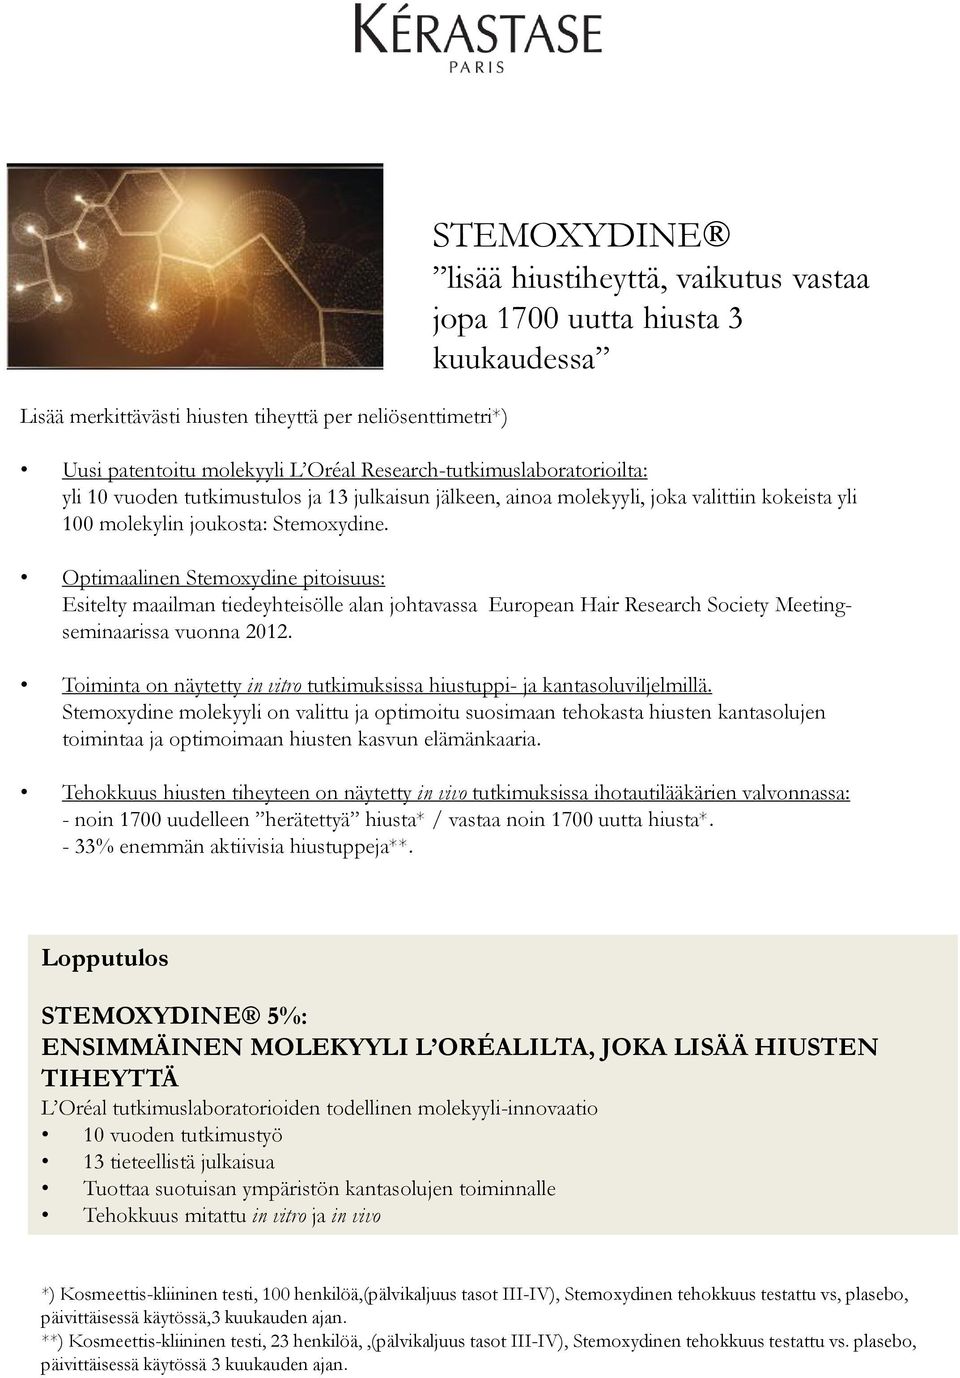 Optimaalinen Stemoxydine pitoisuus: Esitelty maailman tiedeyhteisölle alan johtavassa European Hair Research Society Meetingseminaarissa vuonna 2012.